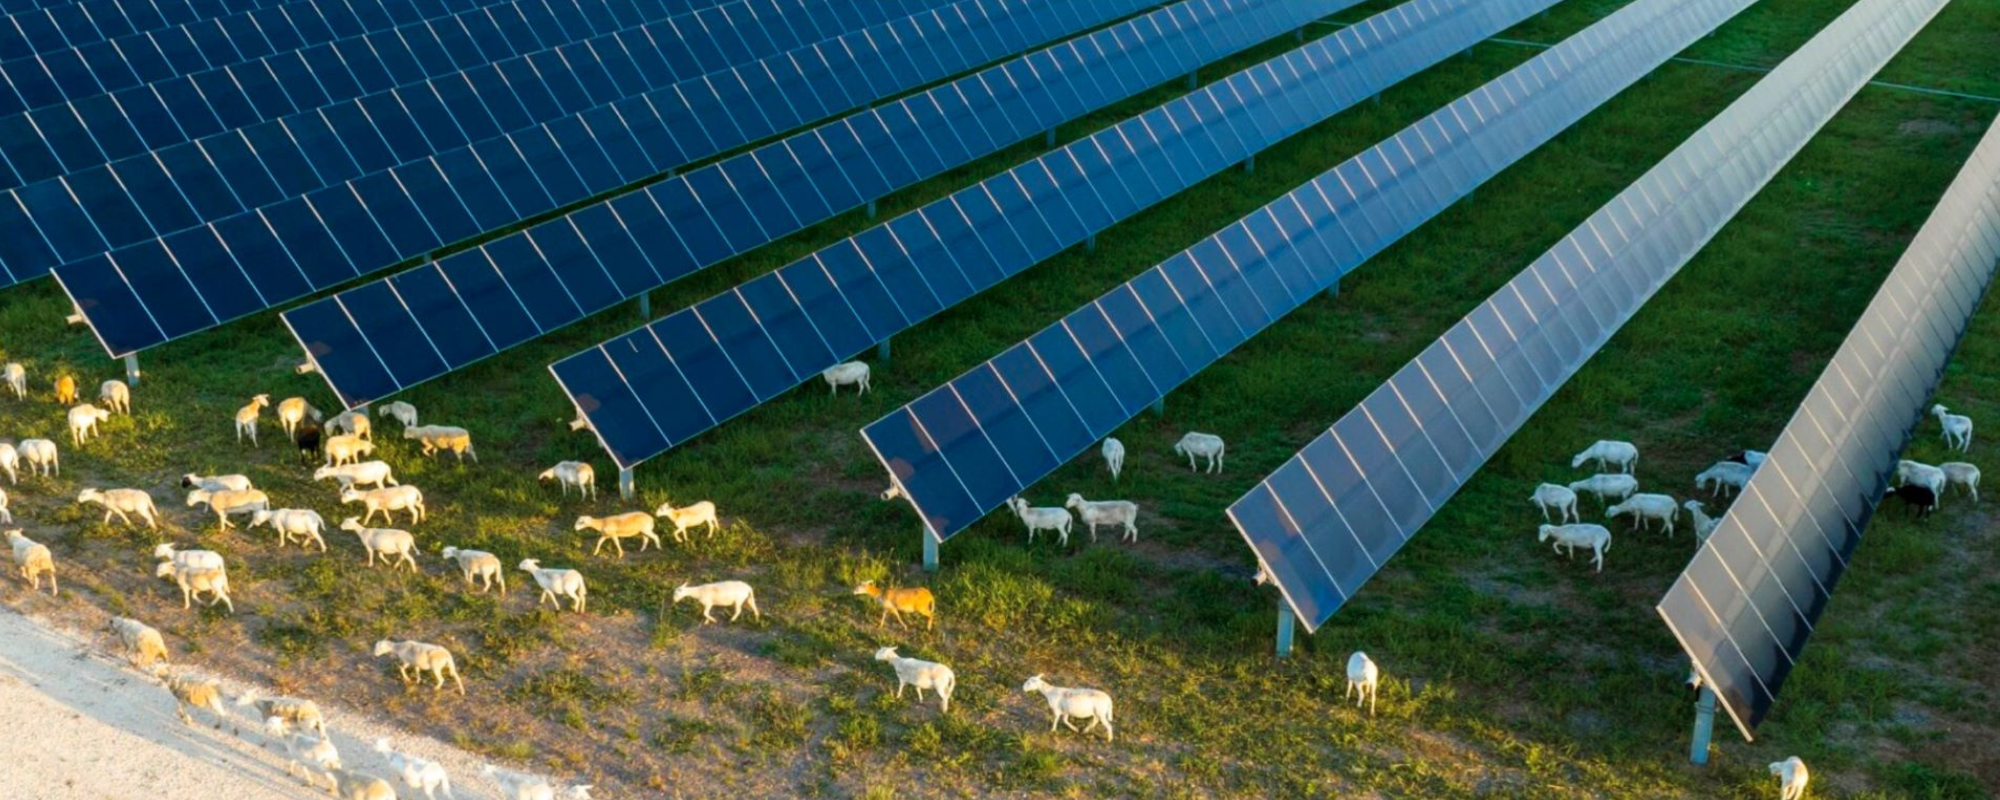 solar farm with sheep